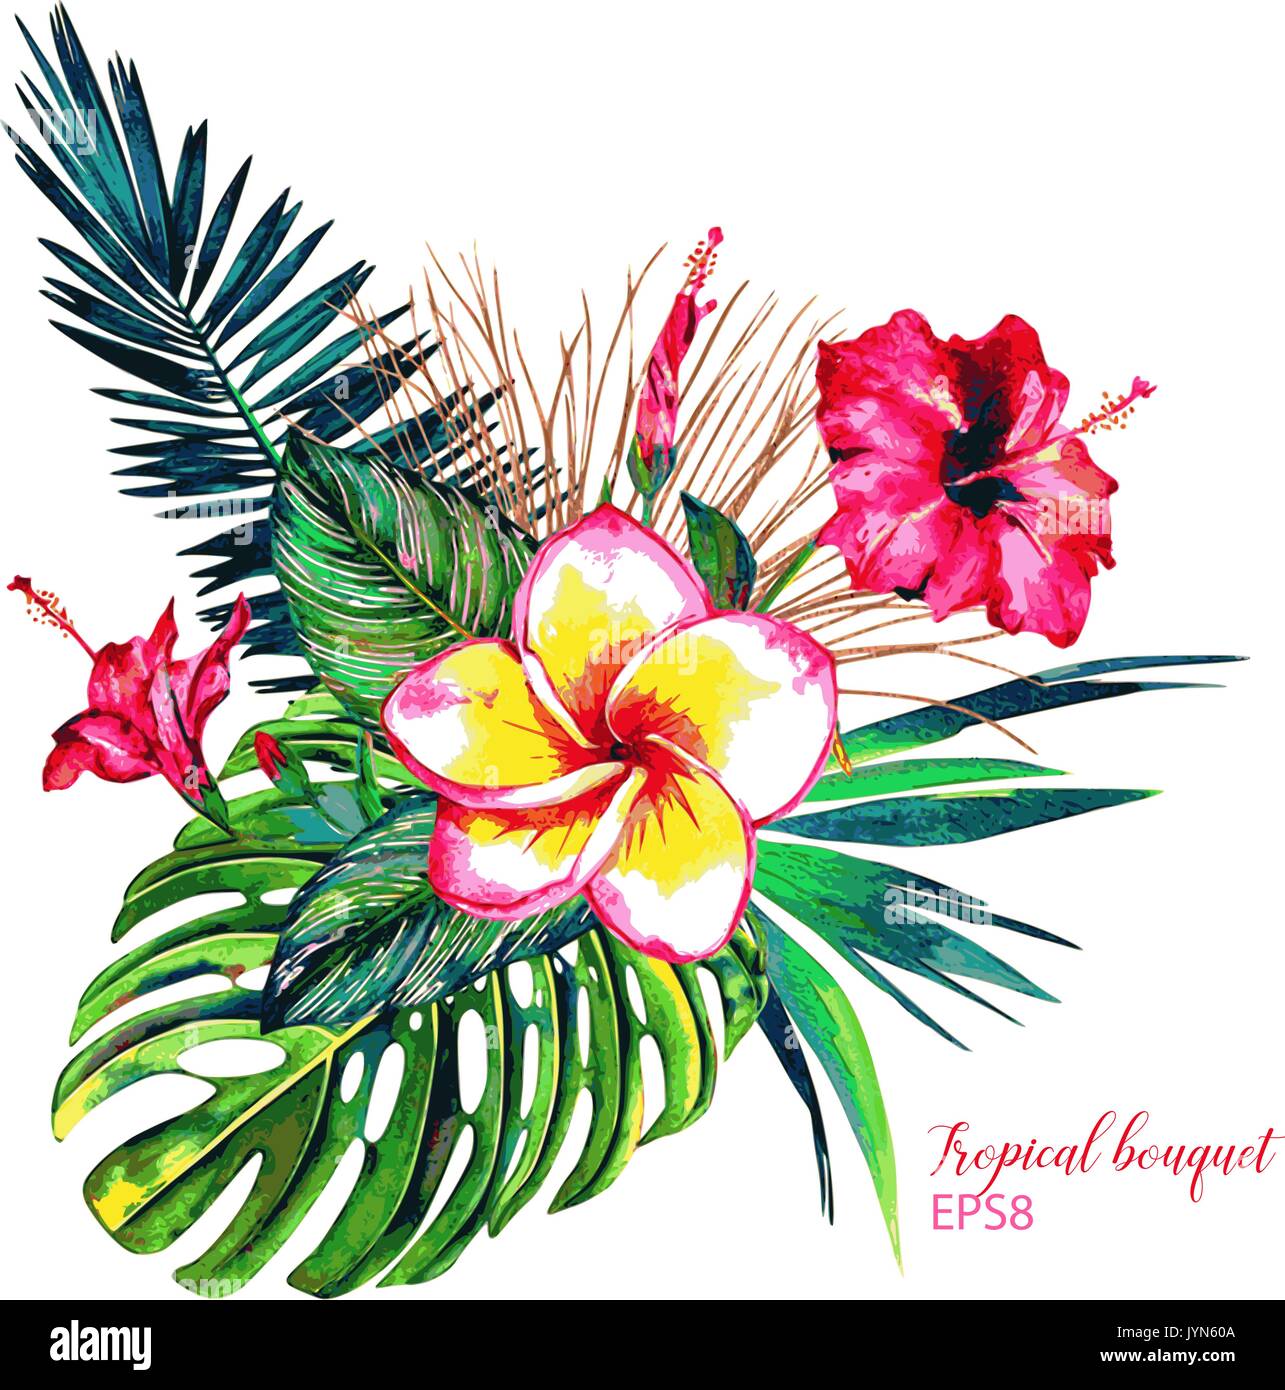 Bouquet Tropical. Fleurs exotiques d'hibiscus et frangipanier, forêt  tropicale de feuilles de palmier, calathea et monstera. Floral vecteur fait  main à l'aquarelle Image Vectorielle Stock - Alamy